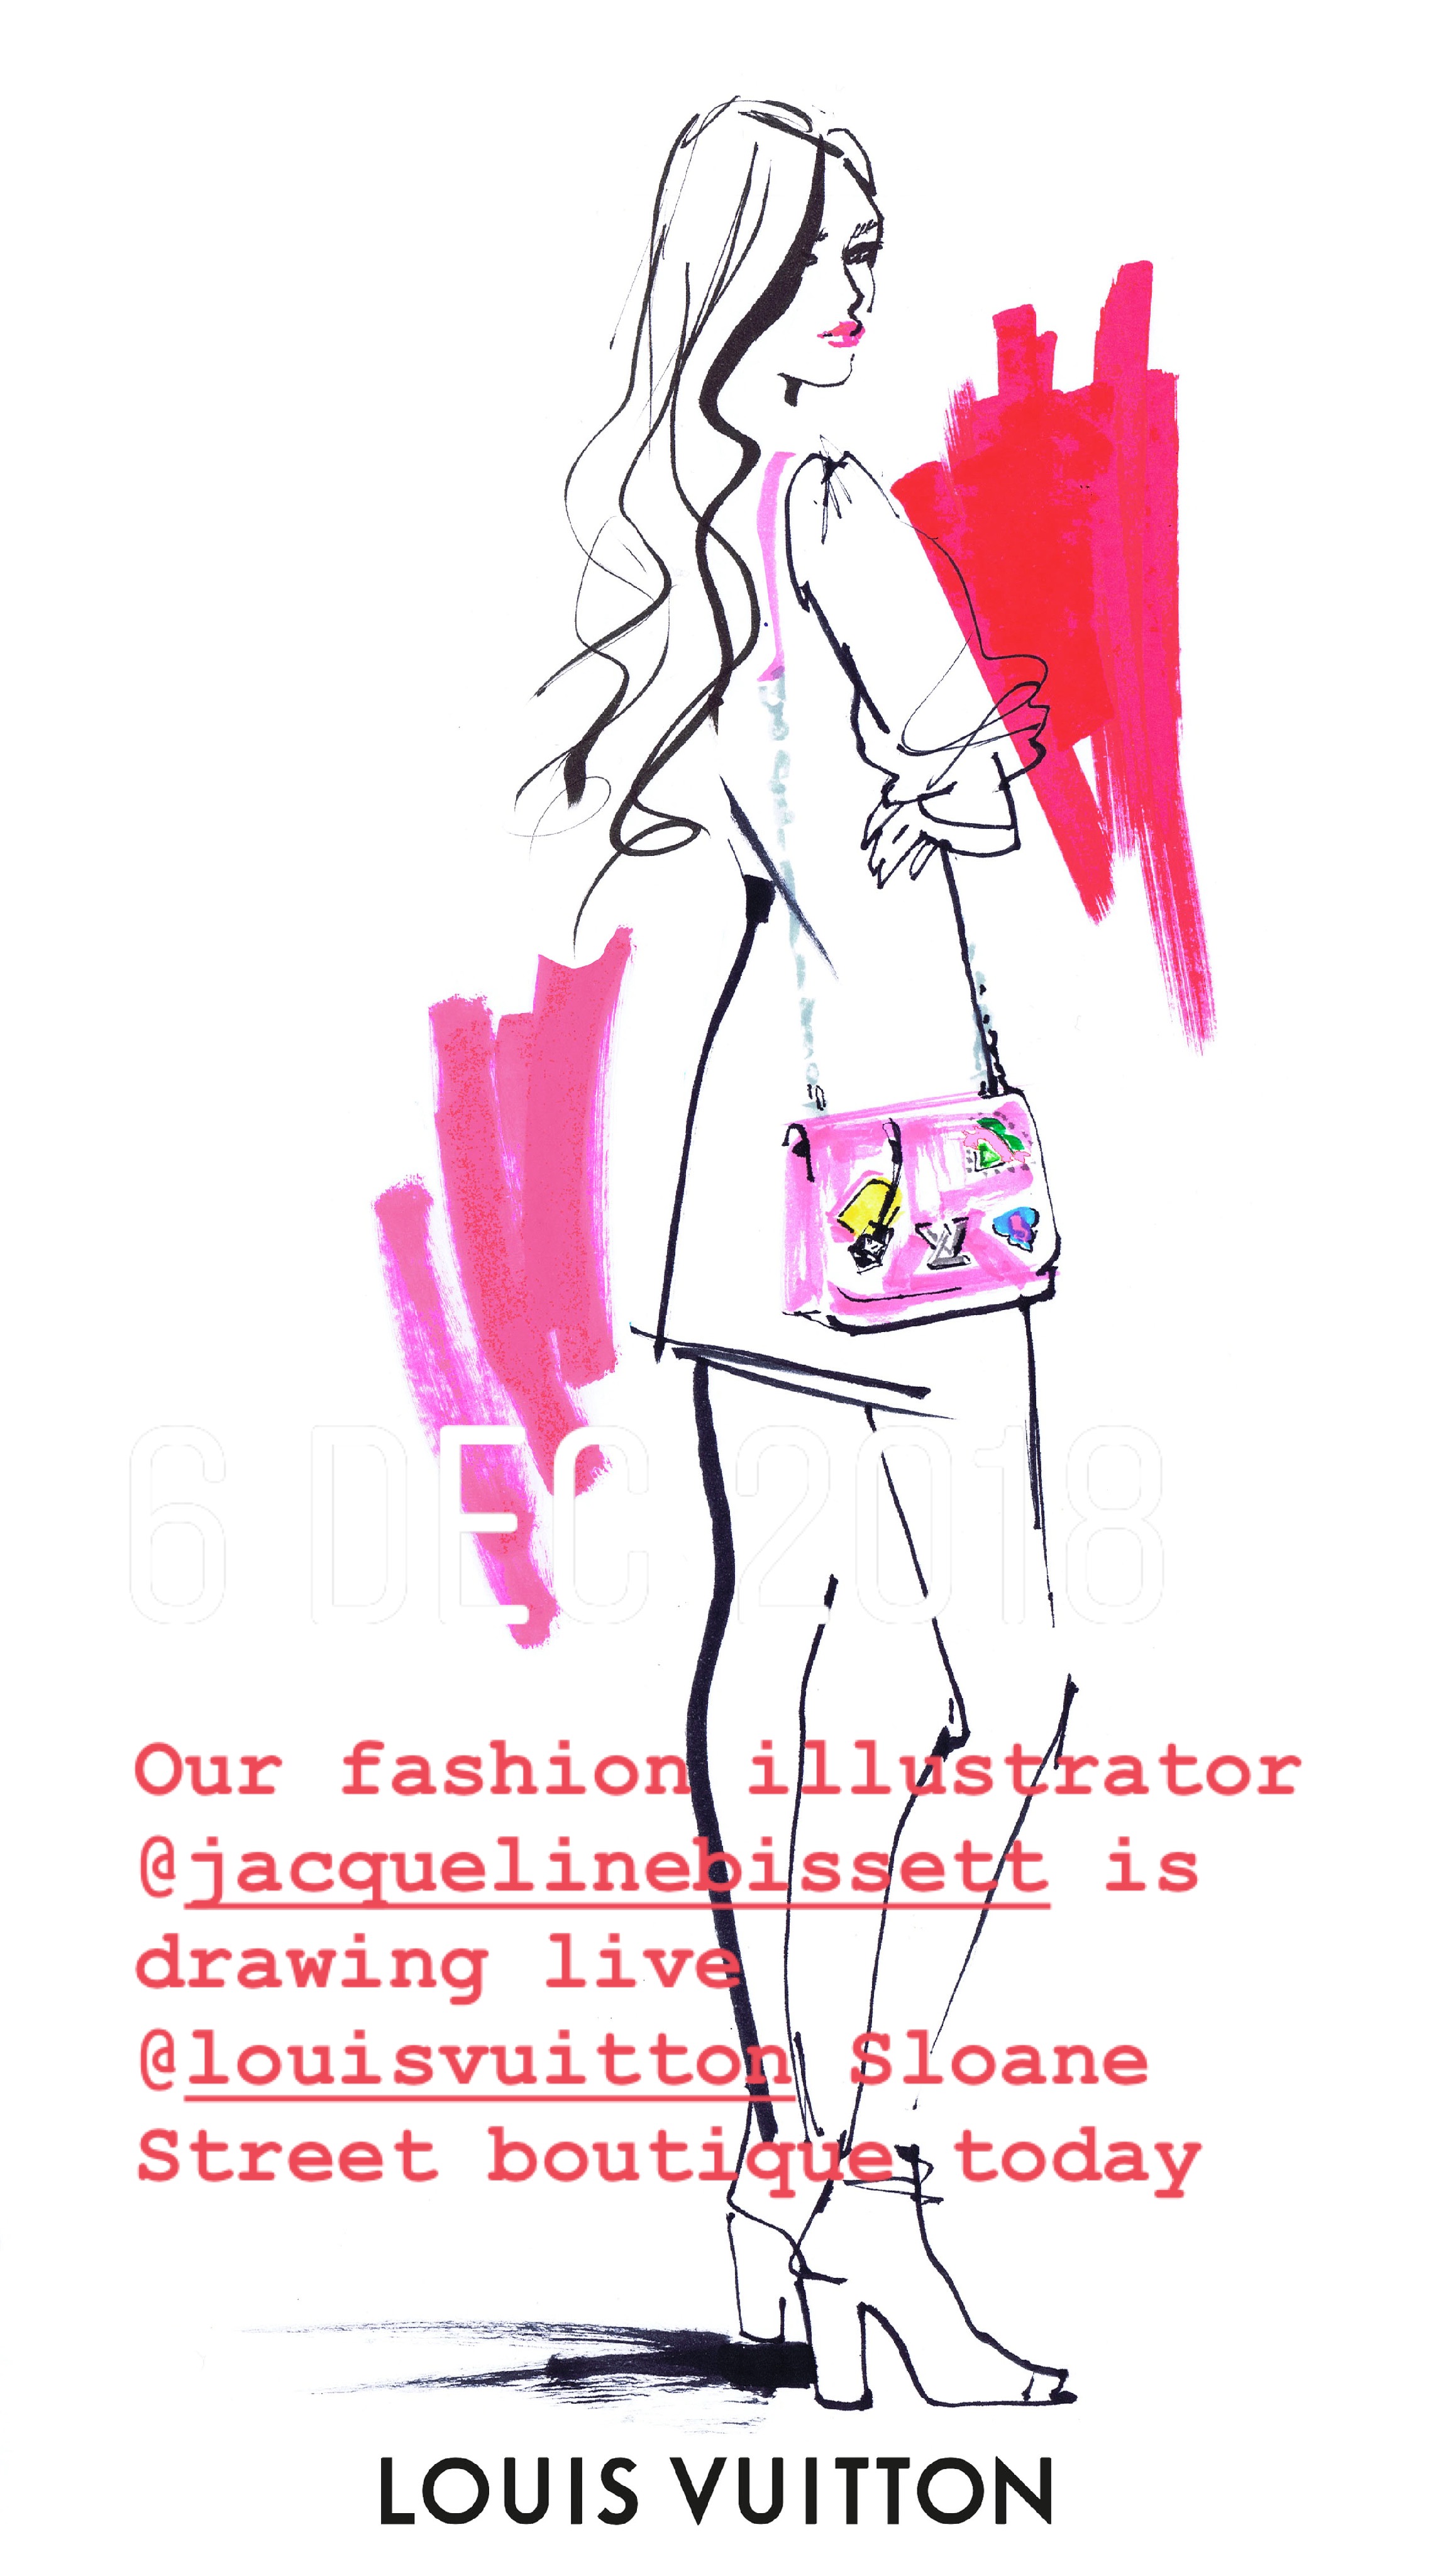 Jacqueline illustrates at FOUR Louis Vuitton Pre Xmas Cocktail